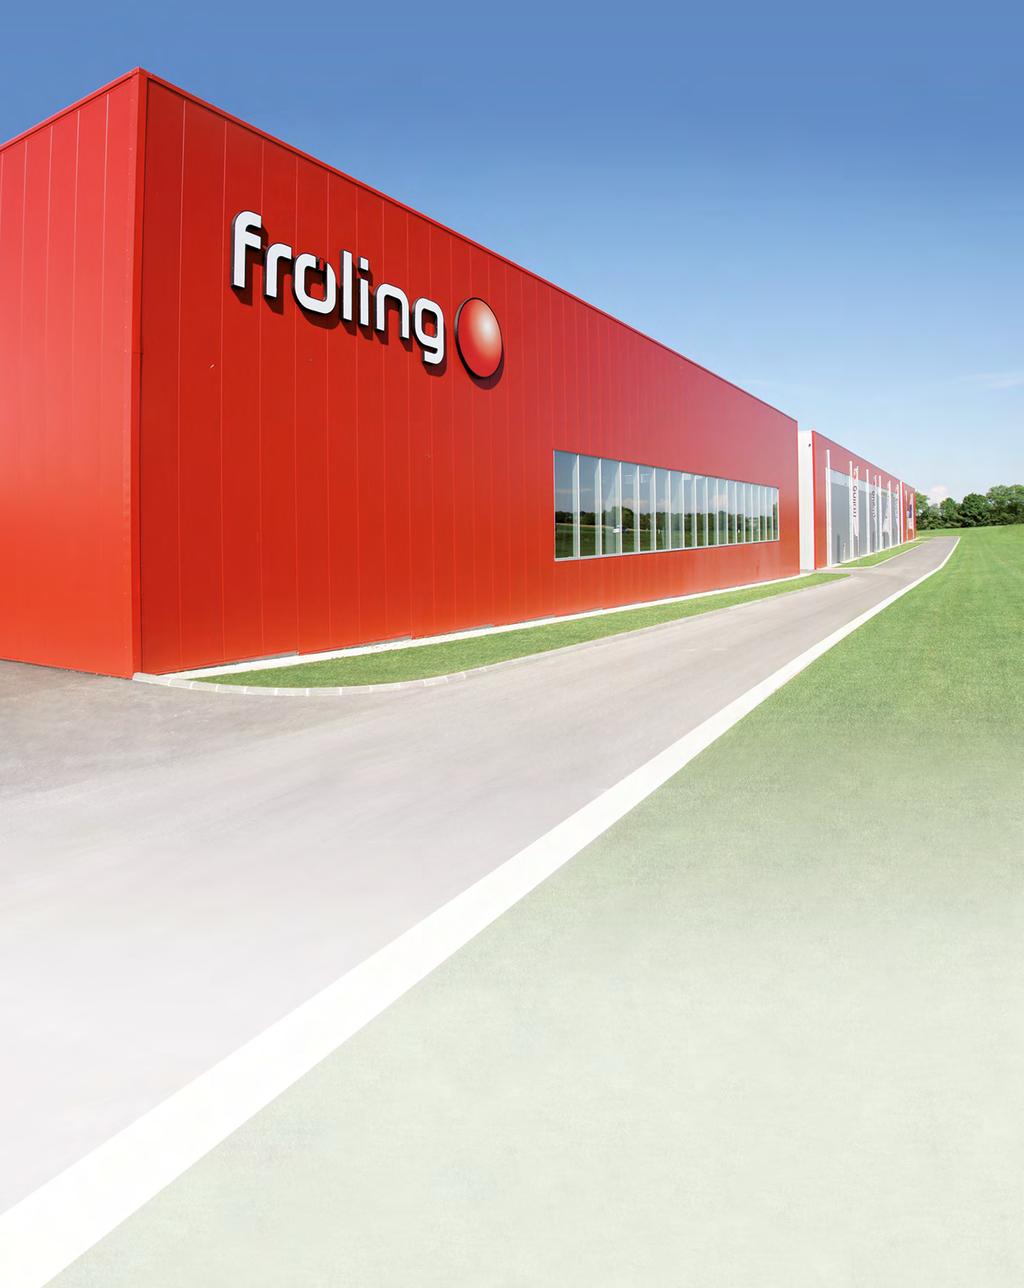 Ogrzewanie zrębkami, wiórami i pelletem Nazwa Fröling to więcej niż pięćdziesiąt lat nowoczesnej i wydajnej techniki grzewczej z biomasy Fröling specjalizuje się od początku w efektywne wykorzystanie